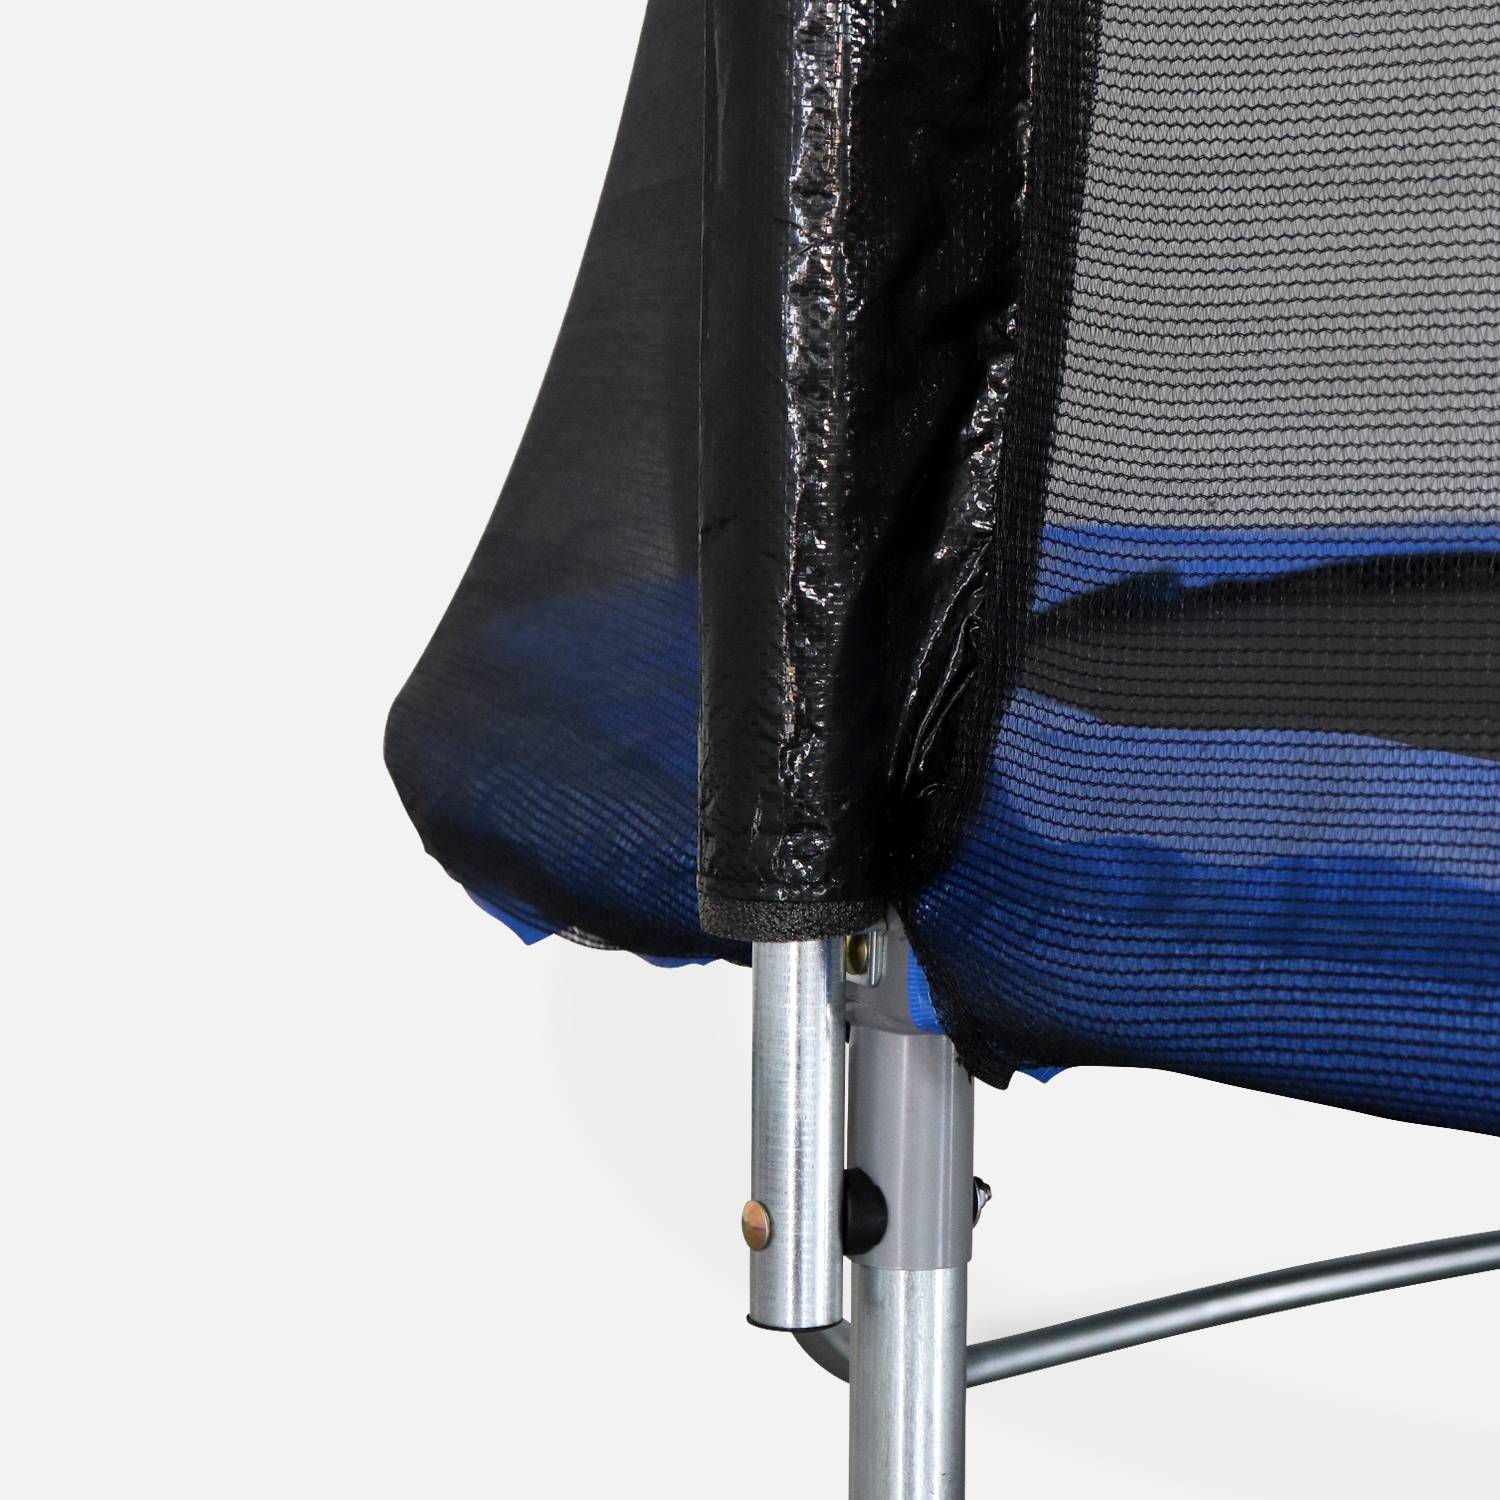 Cama elástica de 250 cm, azul, con red de seguridad, cubierta, red para zapatos, kit de anclaje Photo6